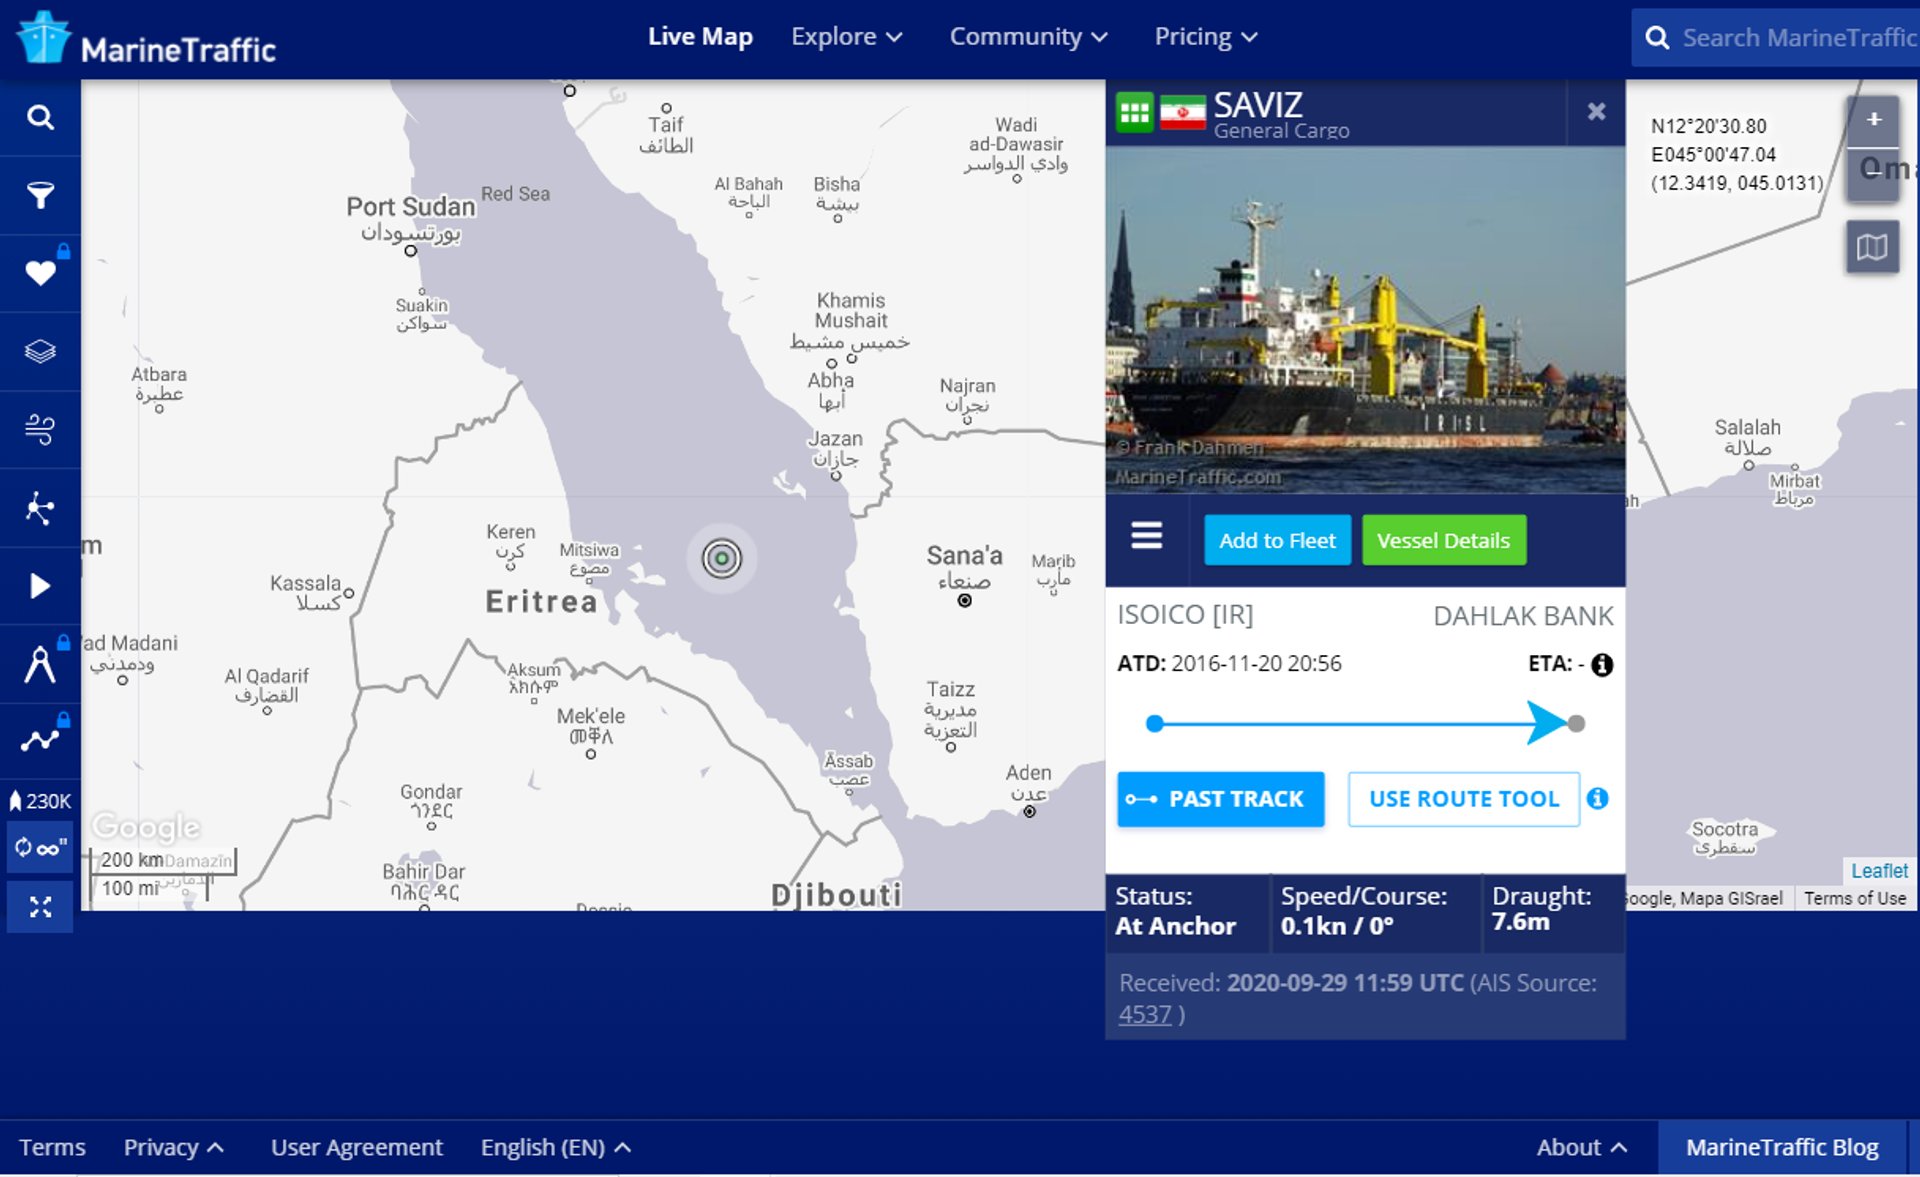 Se navio iraniano Saviz for atacado, é provável batalha entre Israel e Irã no mar, diz mídia - Sputnik Brasil, 1920, 12.04.2021